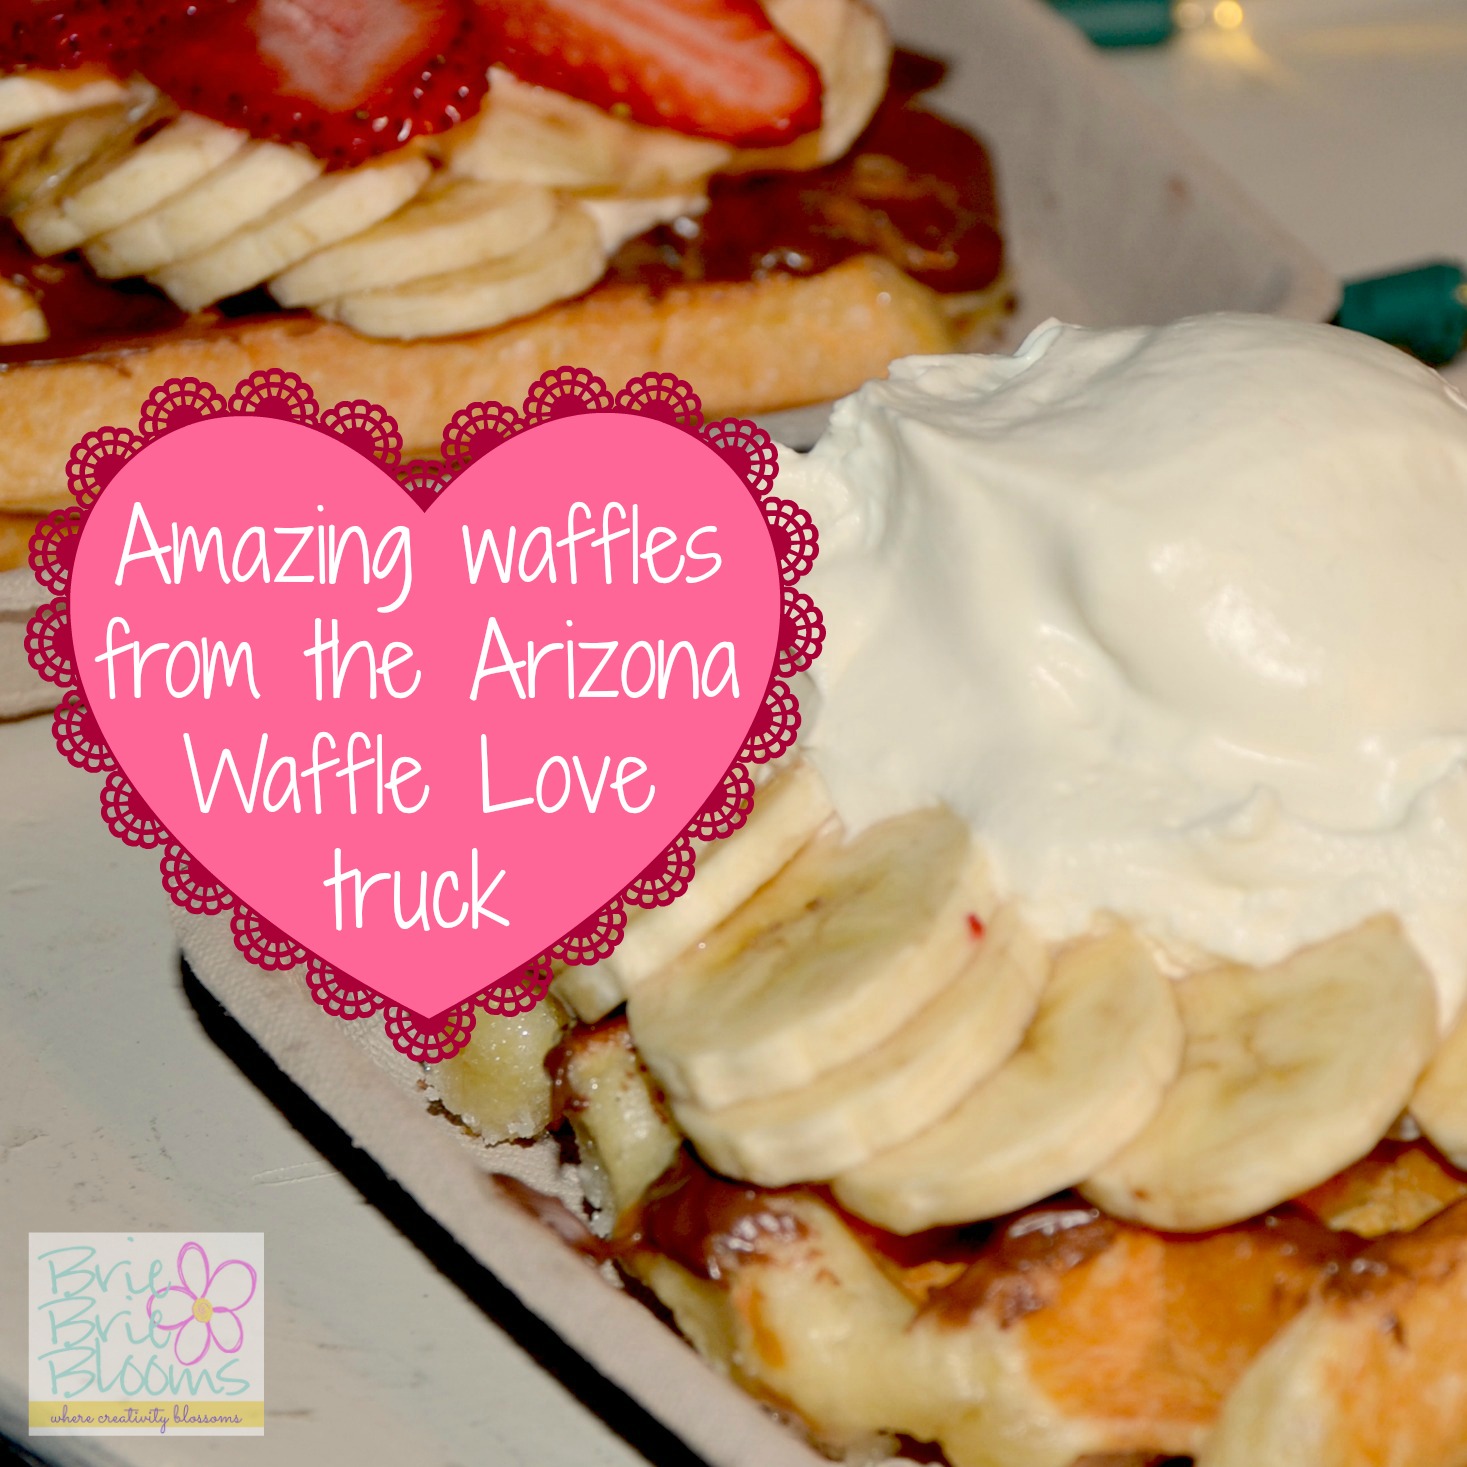 Amazing waffles from the Arizona Waffle Love truck #waffluvaz